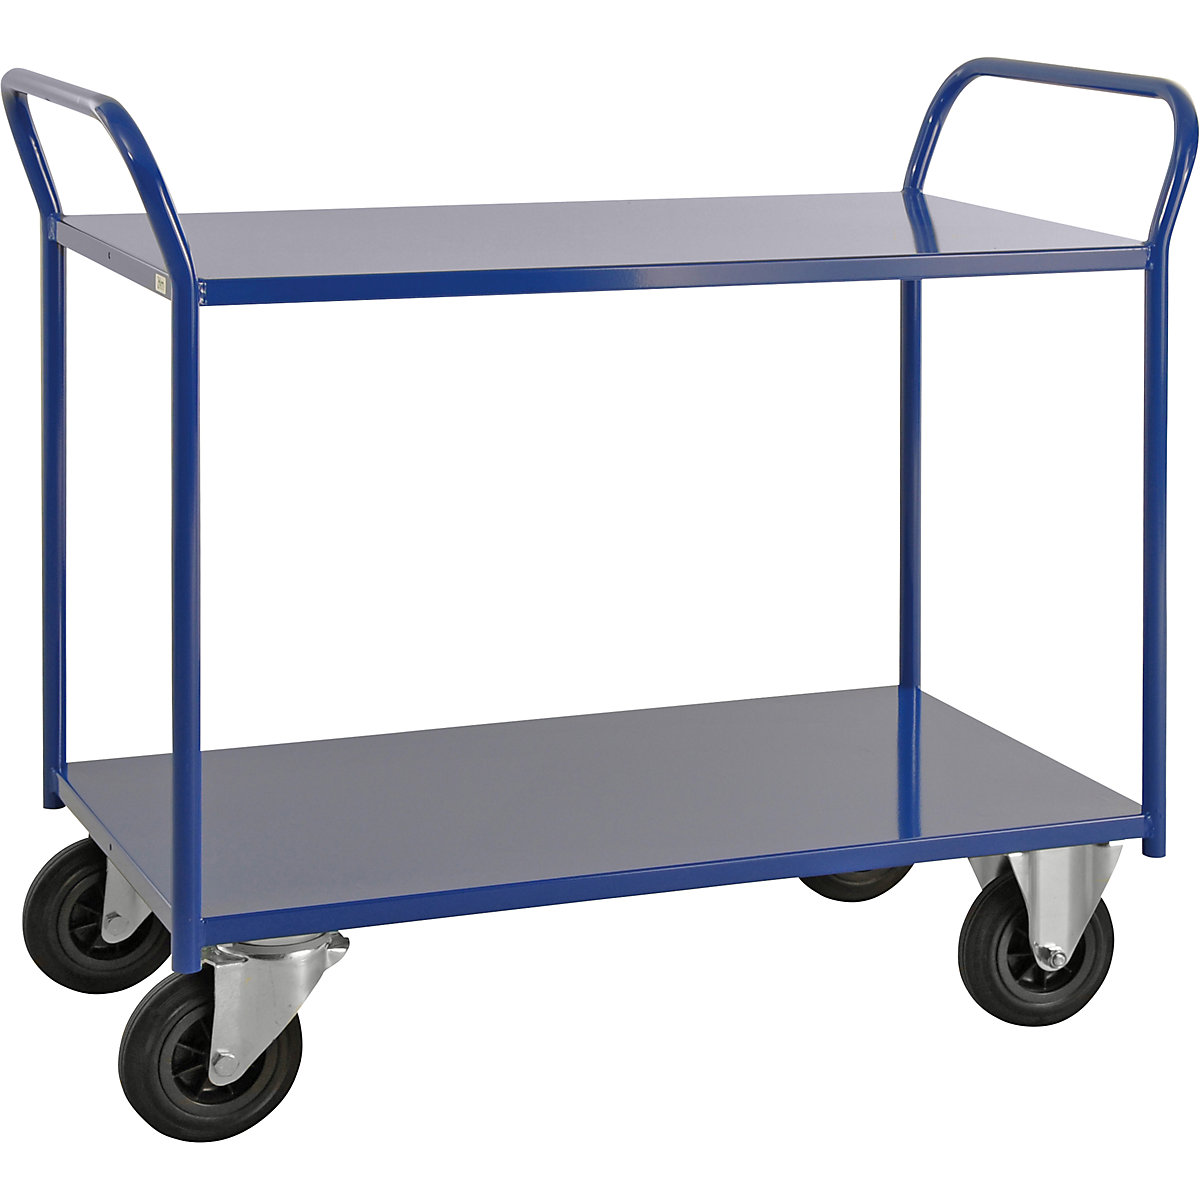 Stolový vozík KM41 – Kongamek, 2 poschodia, d x š x v 1070 x 550 x 1000 mm, modrá, 2 otočné a 2 pevné kolieska, od 5 ks-6